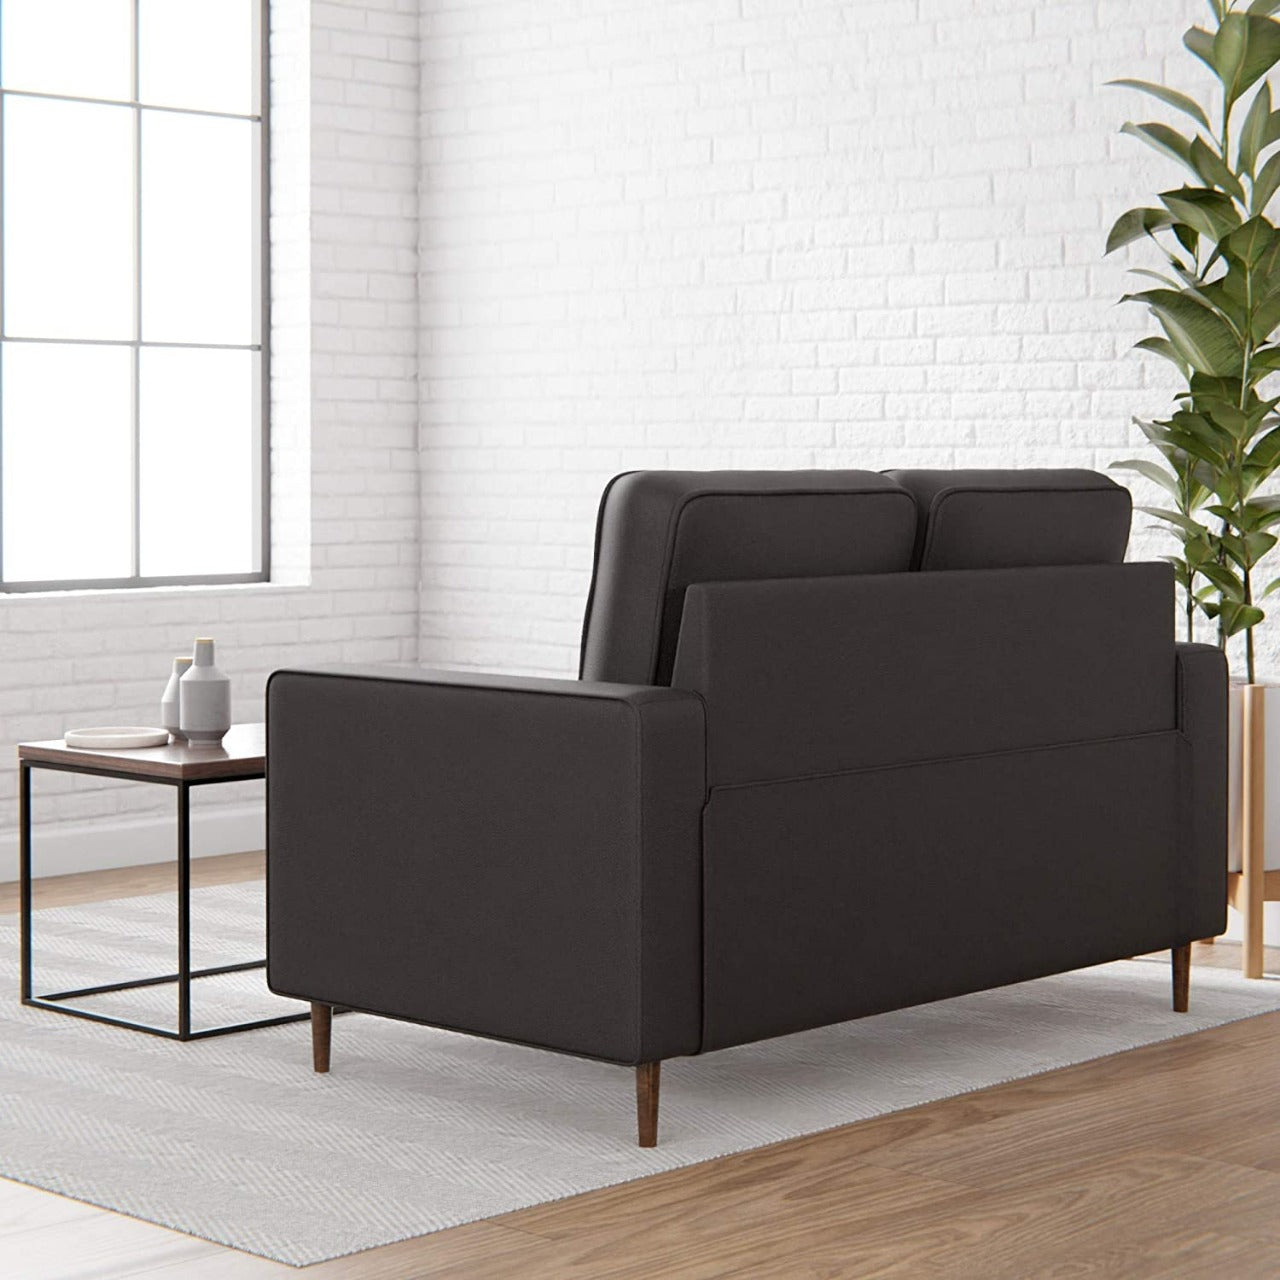 2 Seater Sofa : Faux Leatherette Sofa Set, Multicolour Options